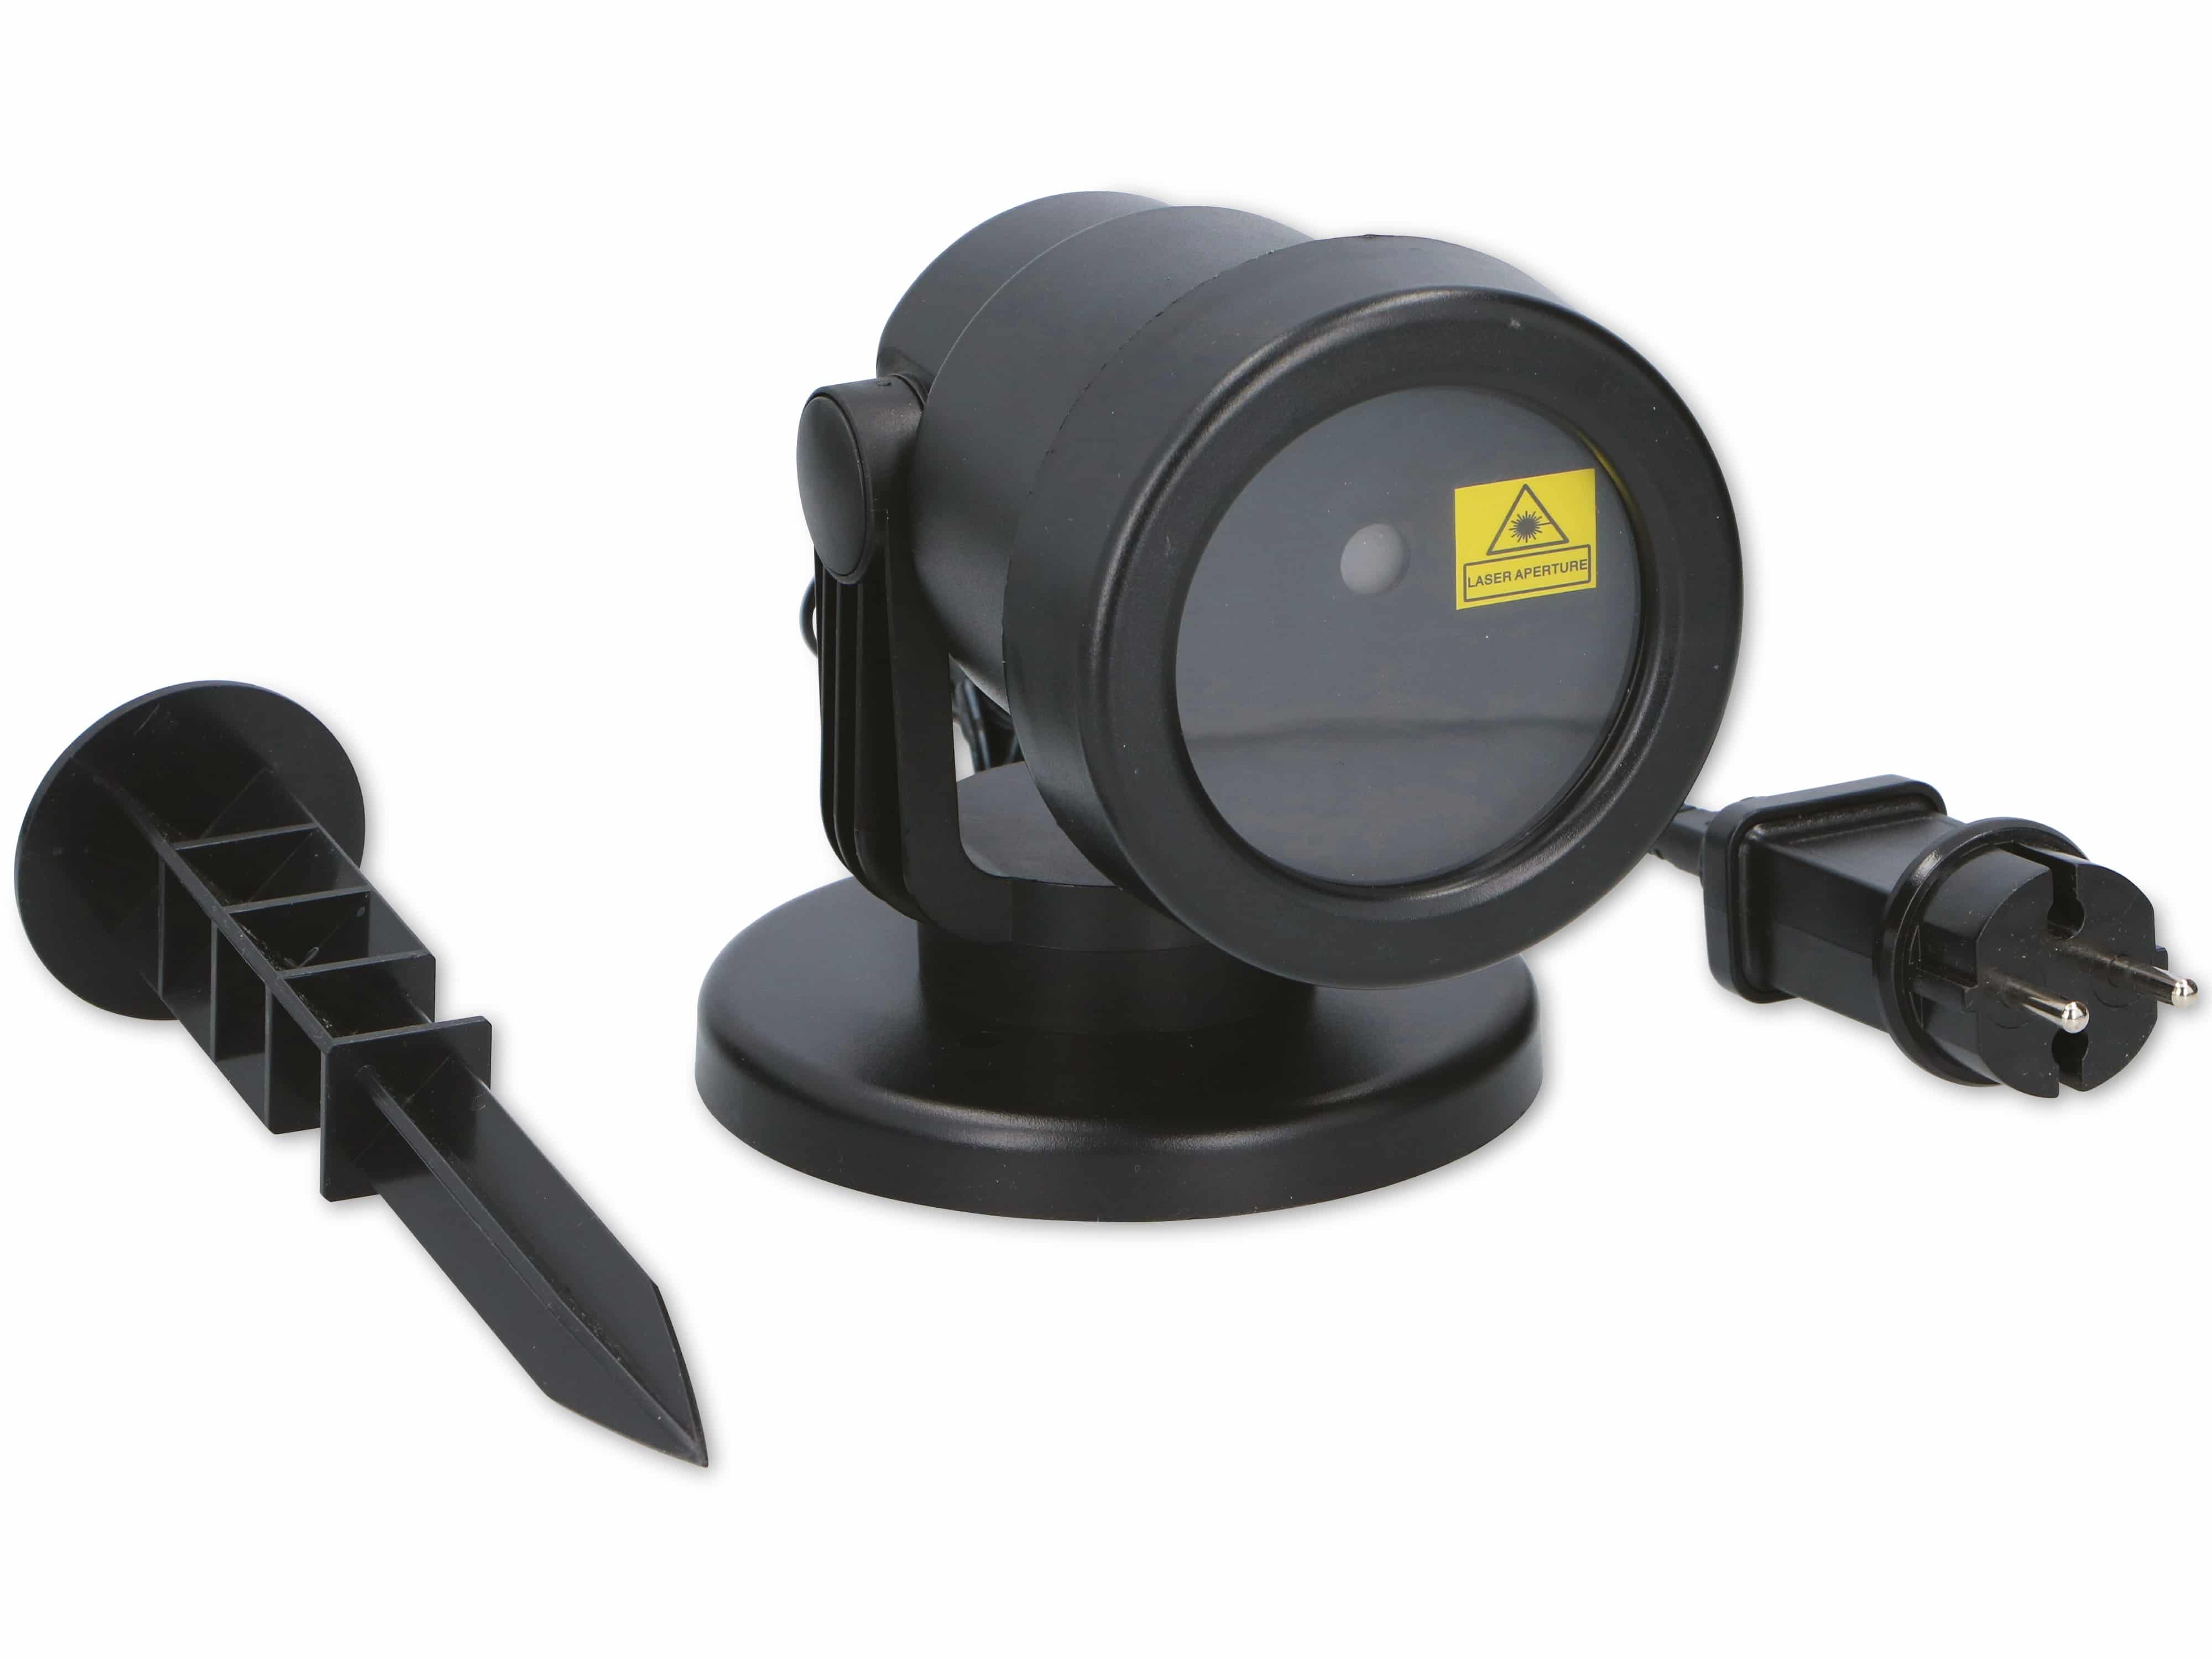 GRUNDIG Laser-Projektor Outdoor, 230V, IP44